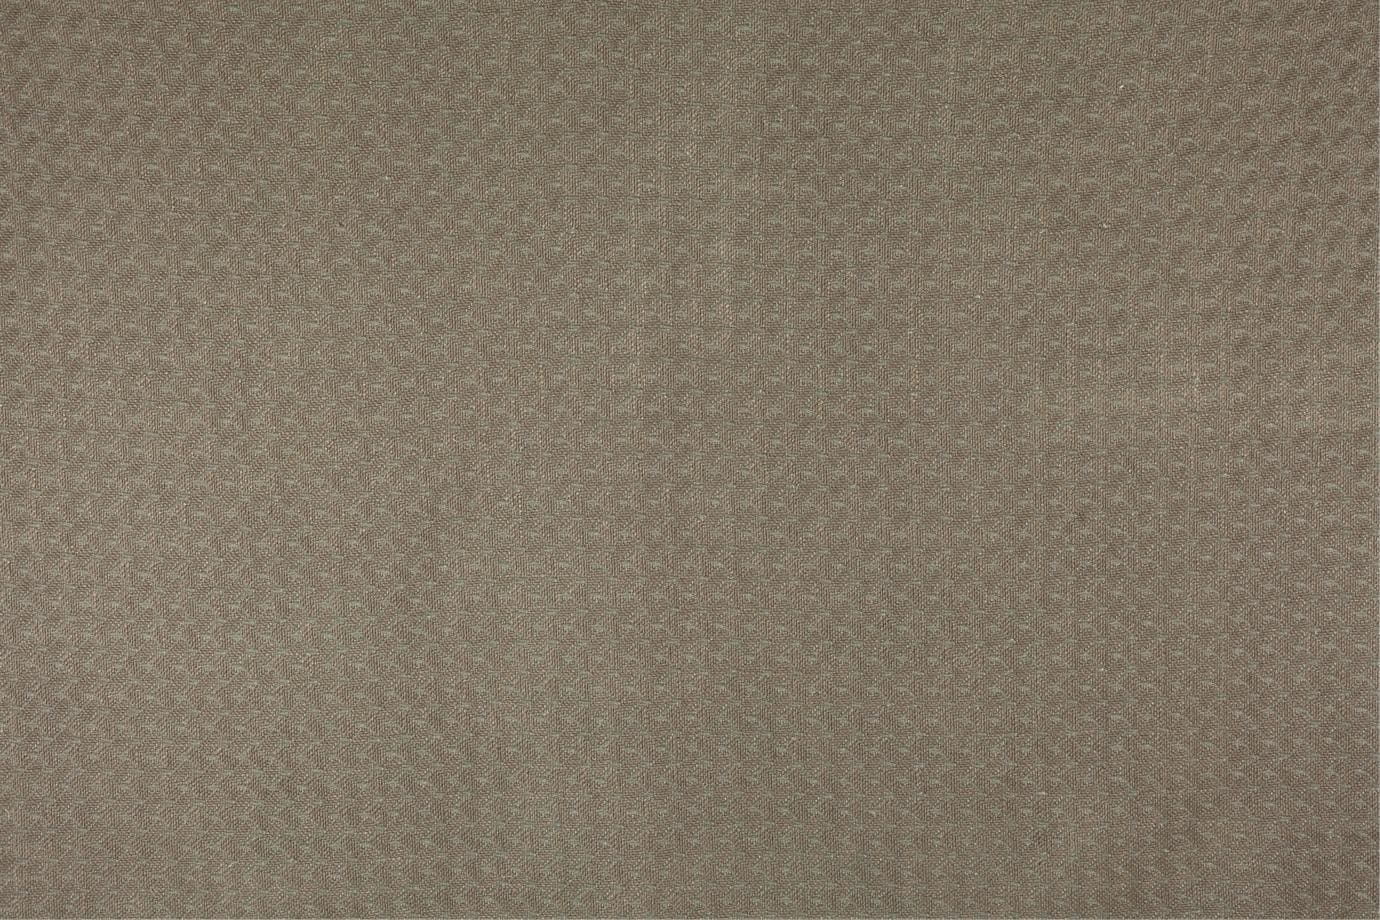 J3492 SPRITZ 005 Pirite home decoration fabric